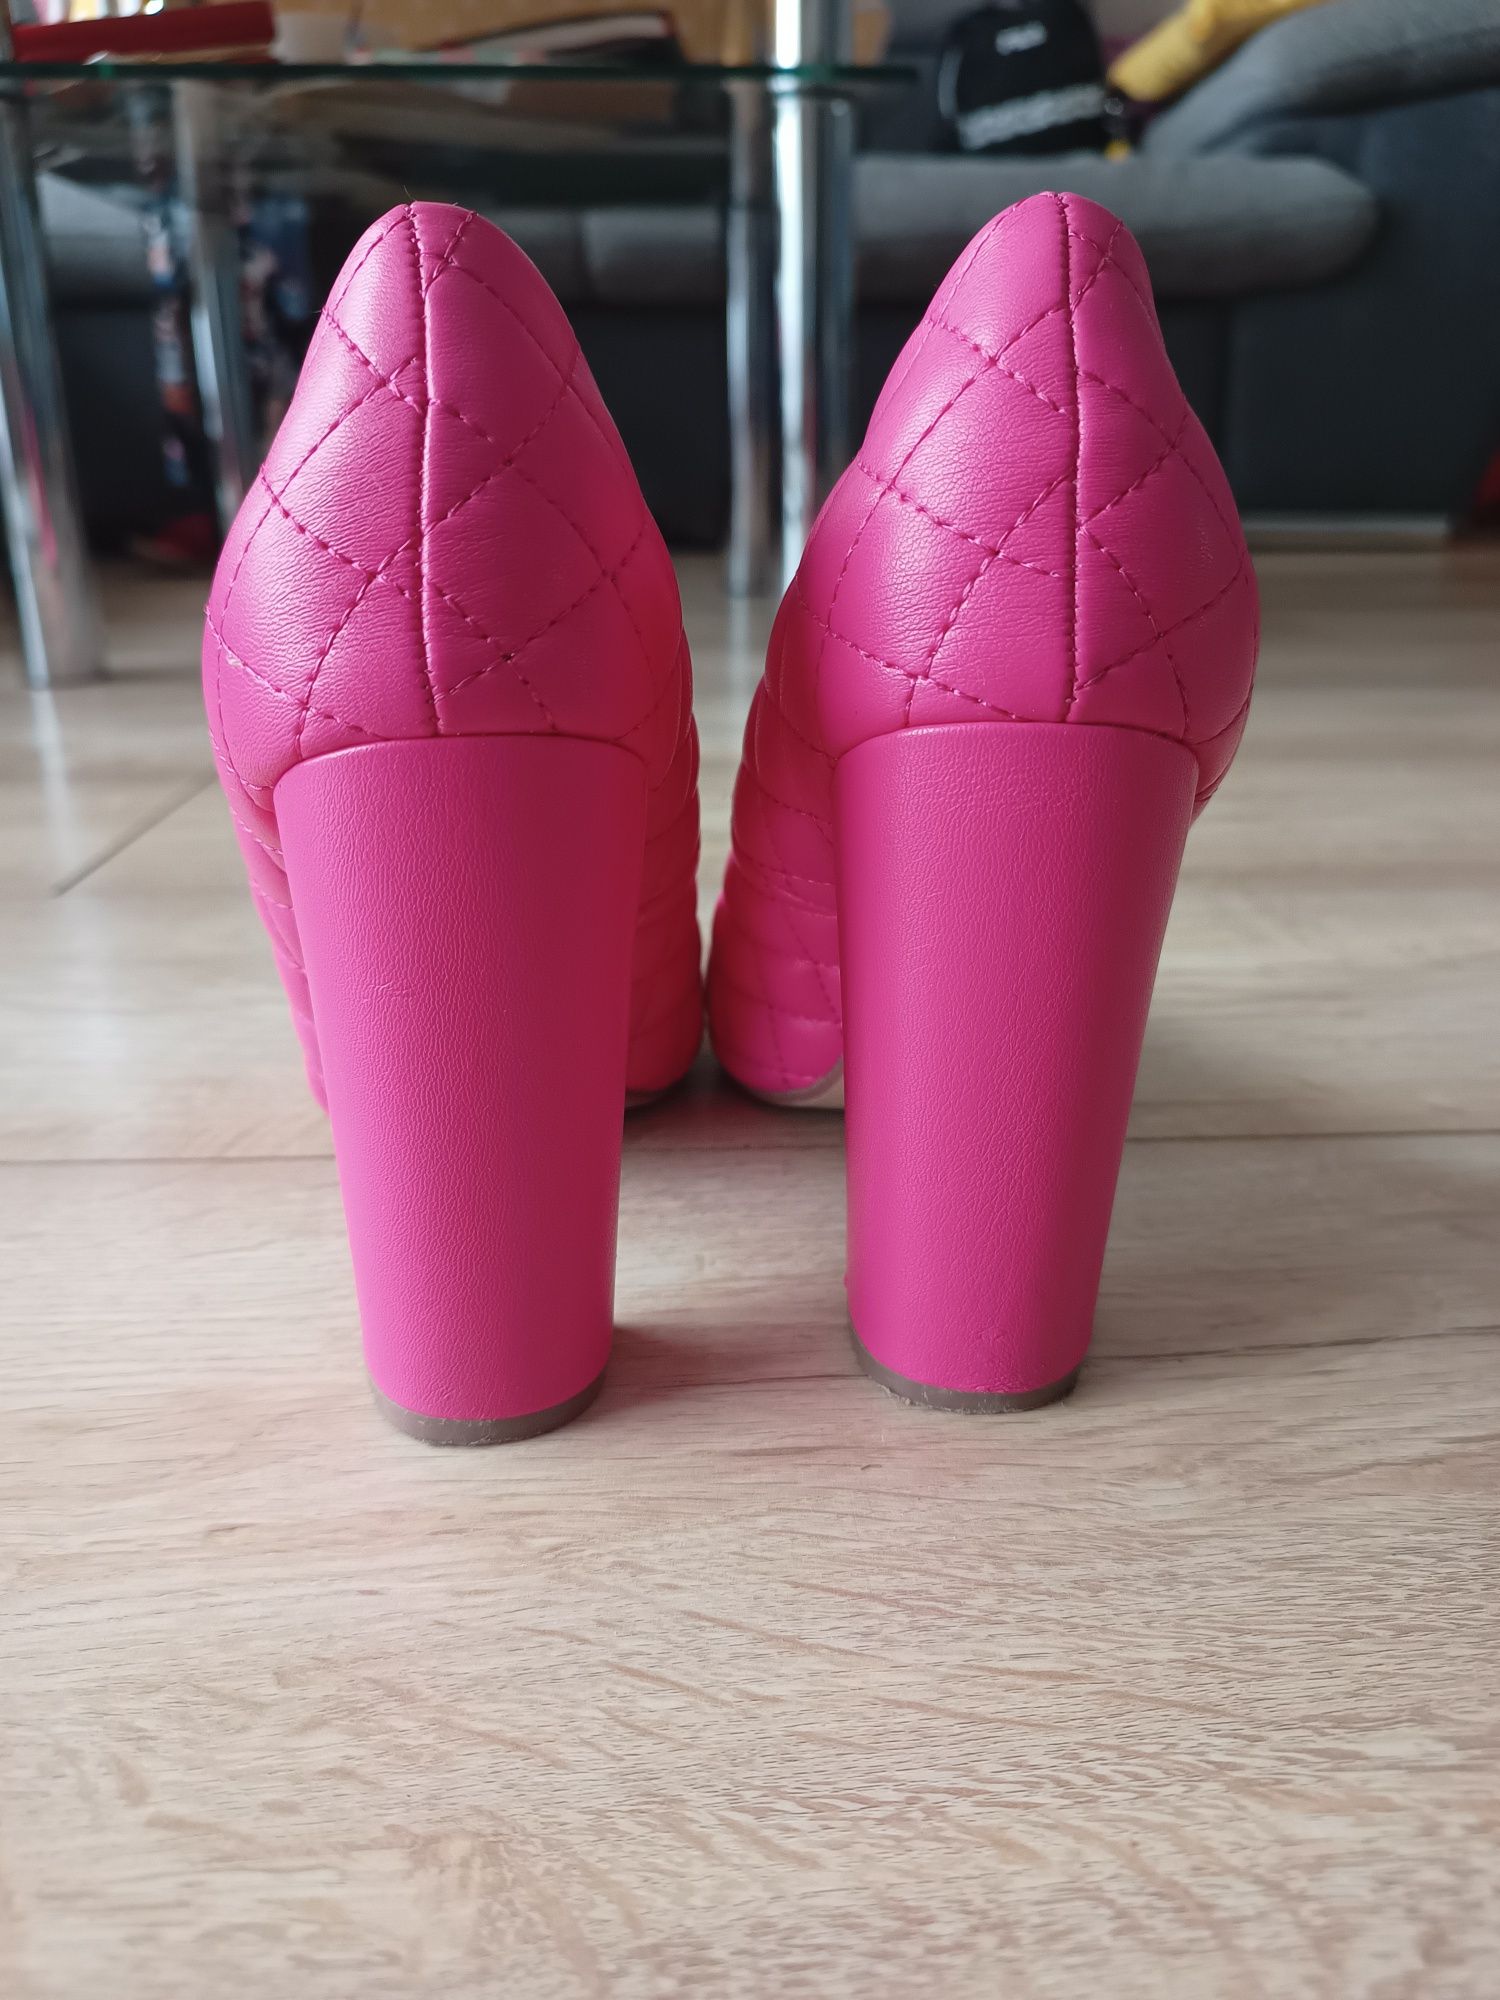 Buty damskie różowe rozm. 37